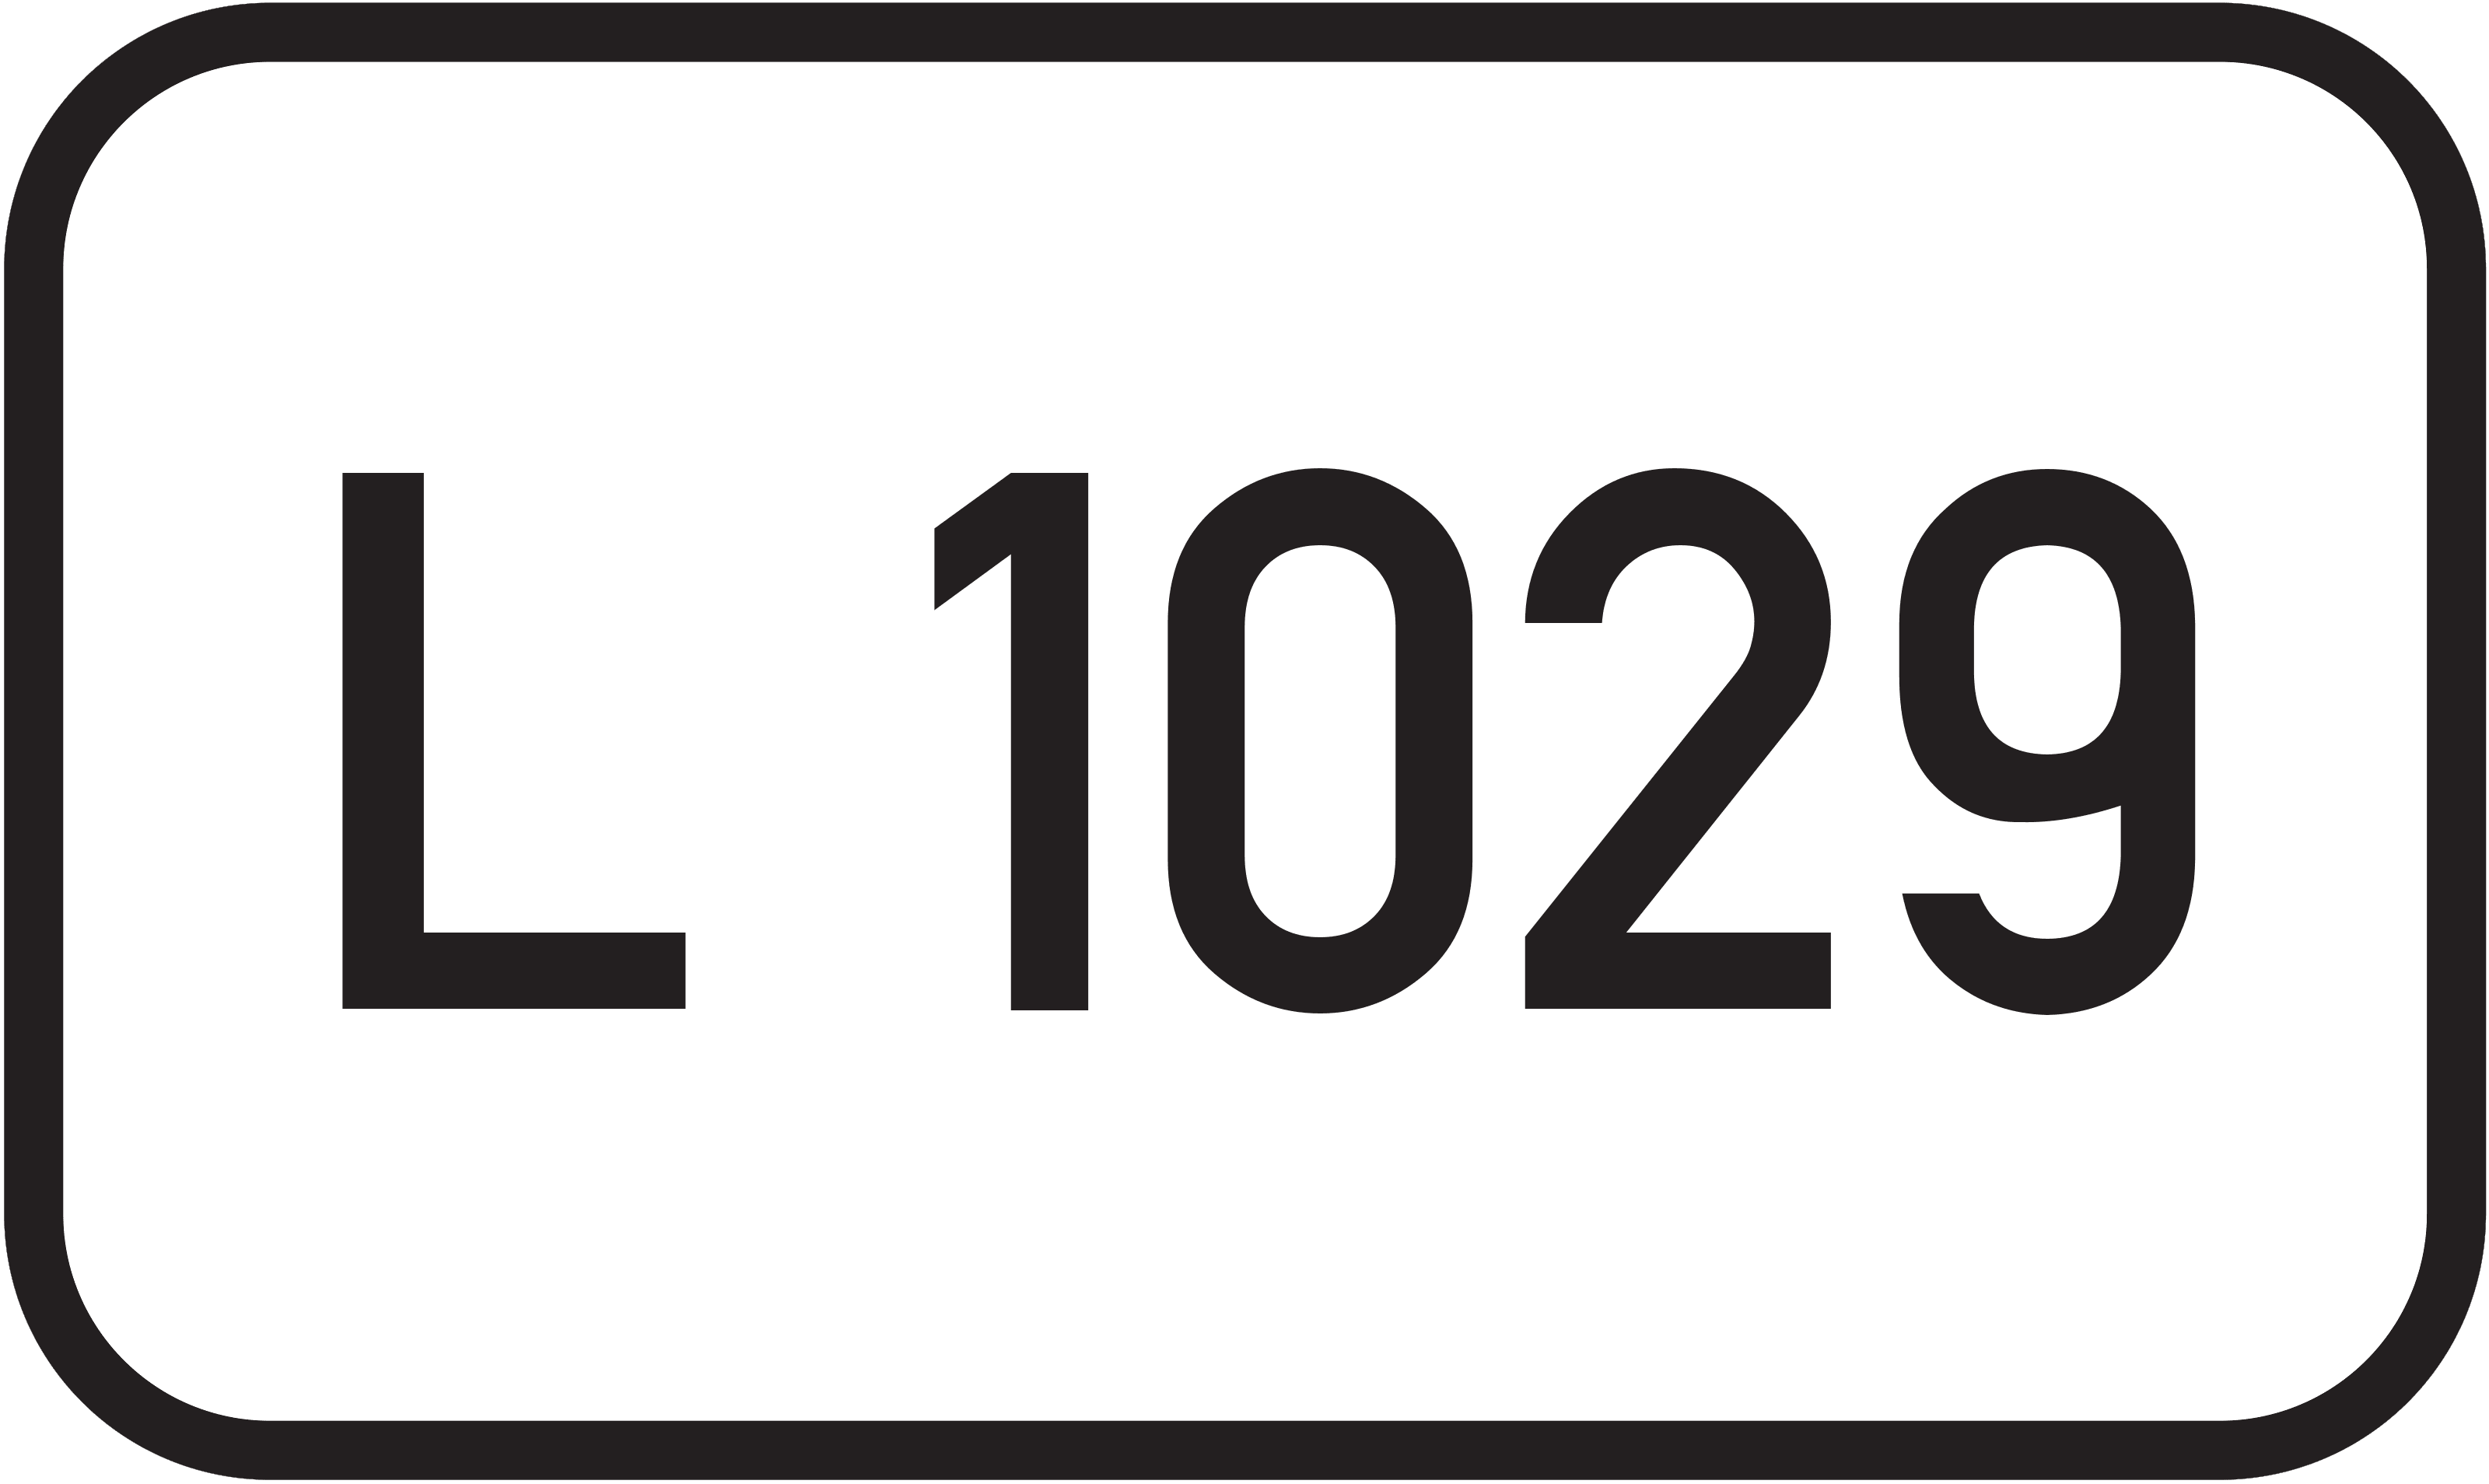 Landesstraße L 1029